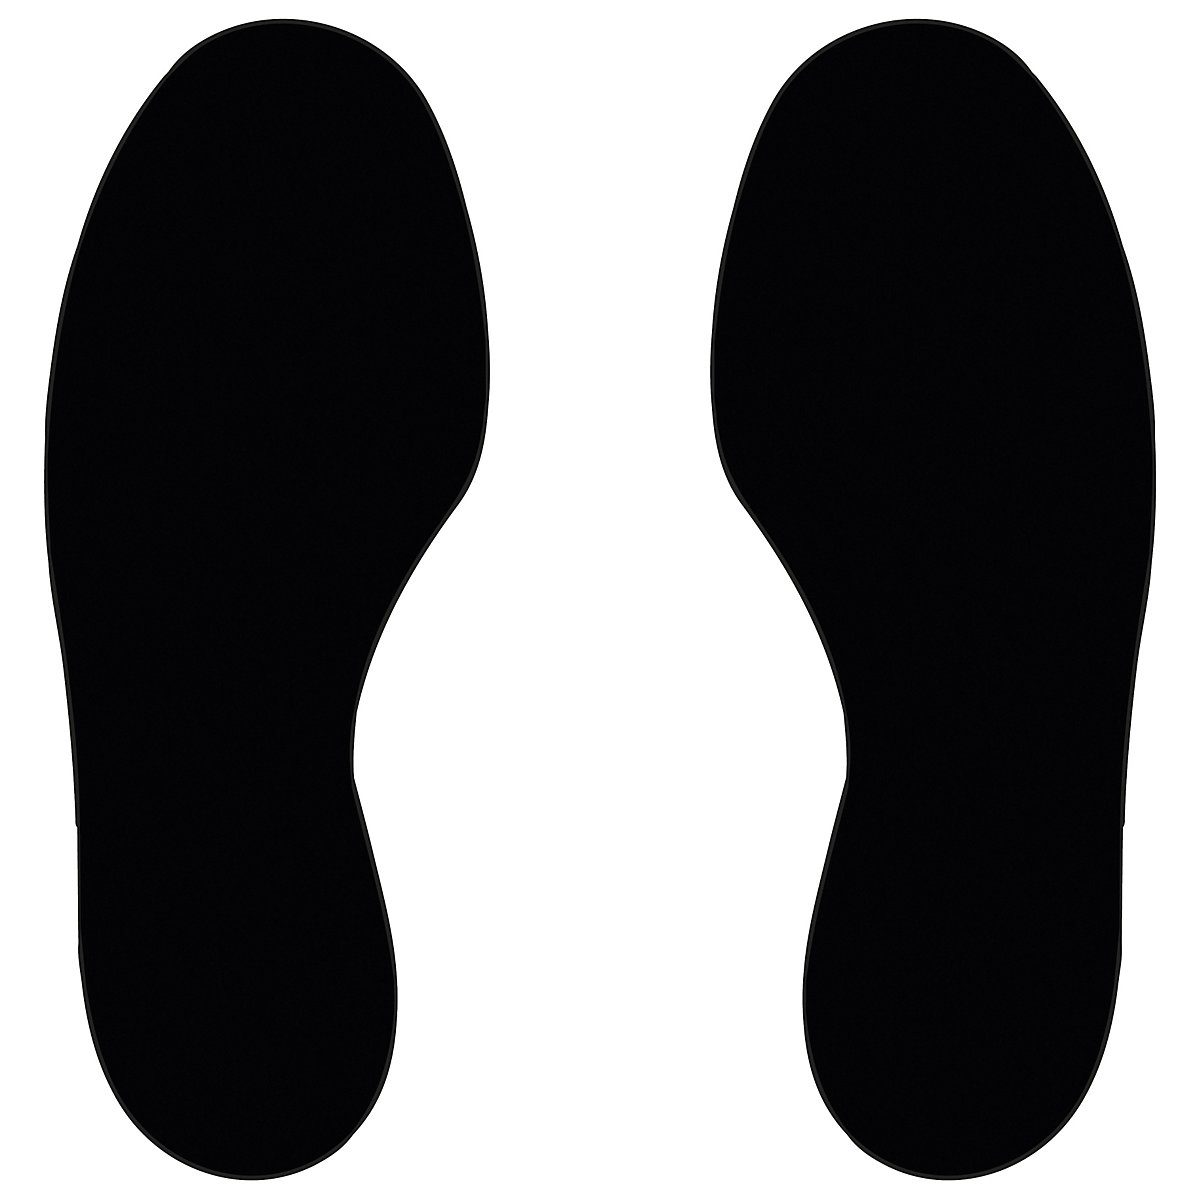 Marquages des sols en PVC, pieds, 5 droits / 5 gauches, lot de 10, noir